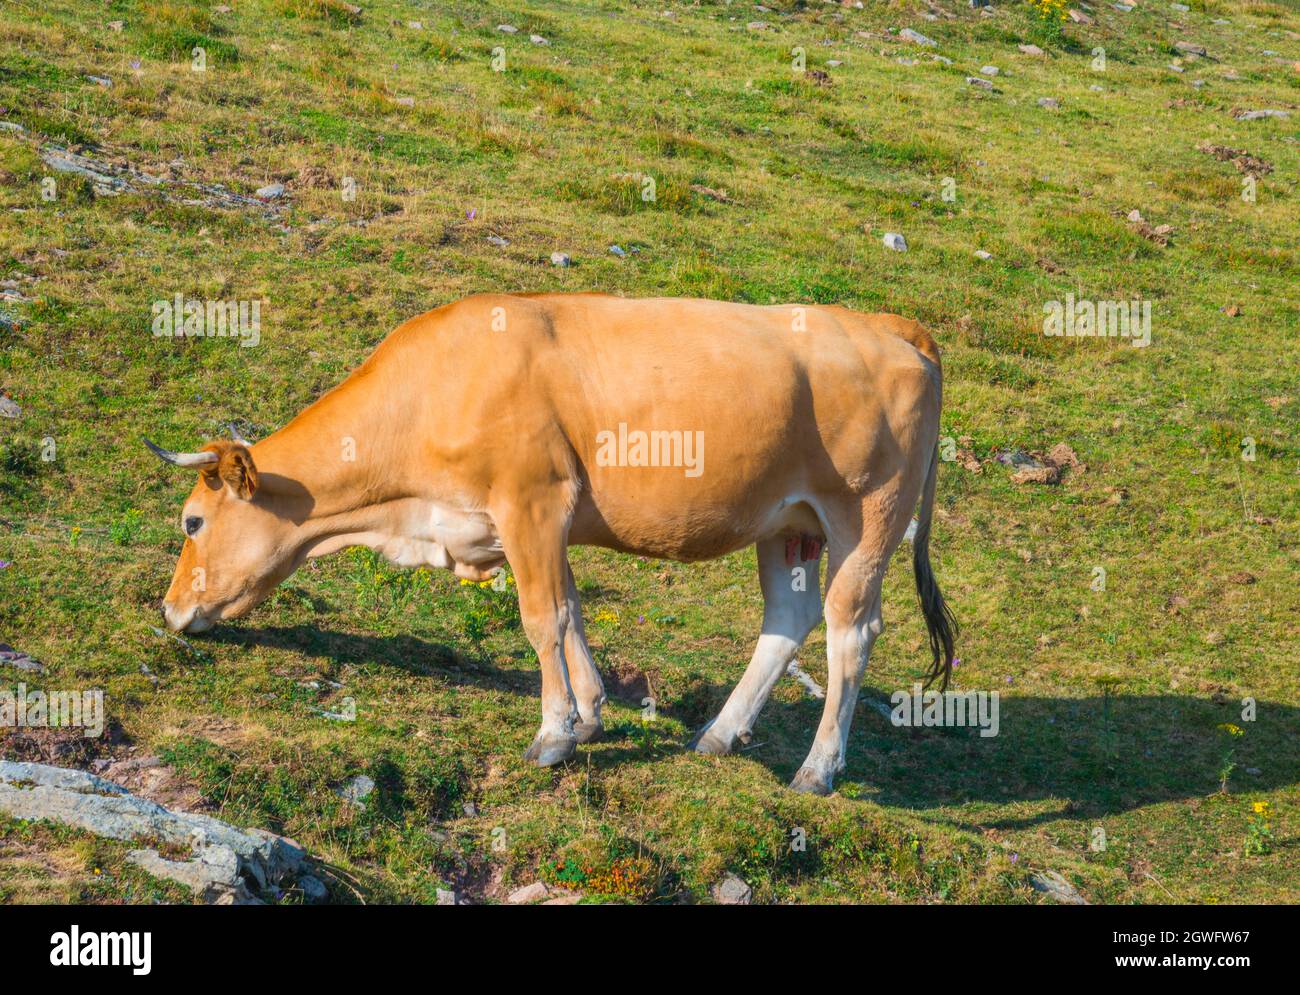 Cow grazing. Stock Photo